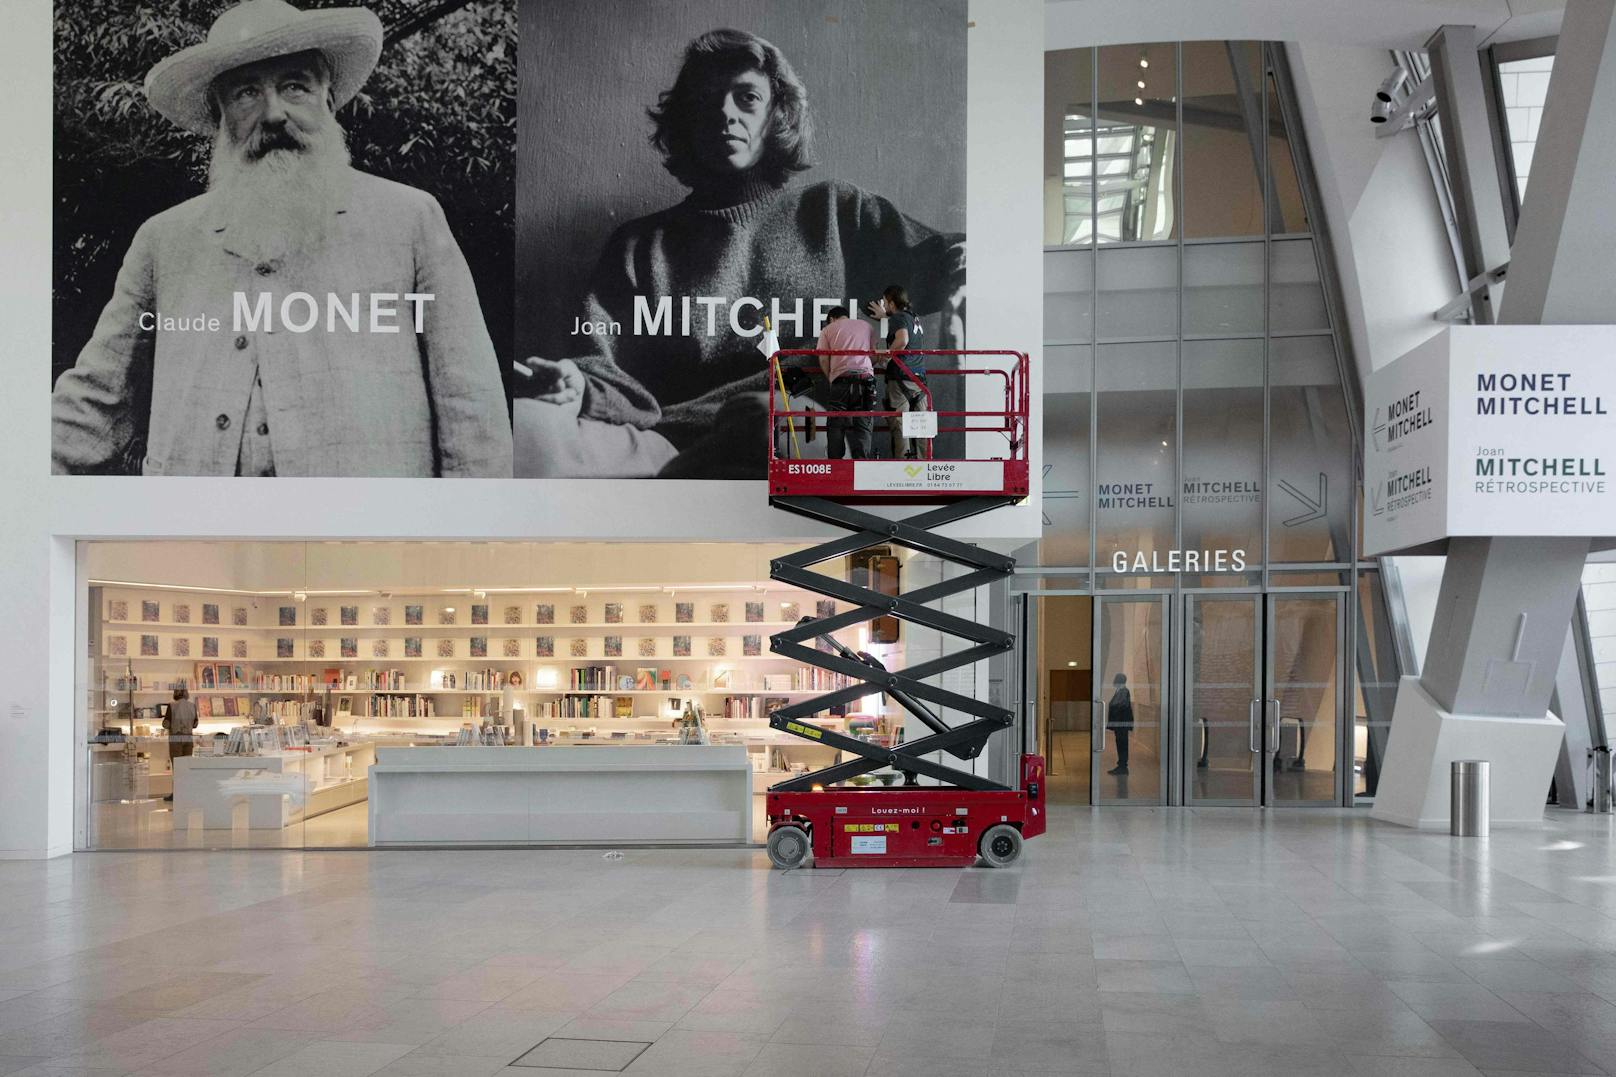 Die Schau "Monet – Mitchell" ist bis 27. Februar in der Fondation Louis Vuitton in Paris zu sehen.